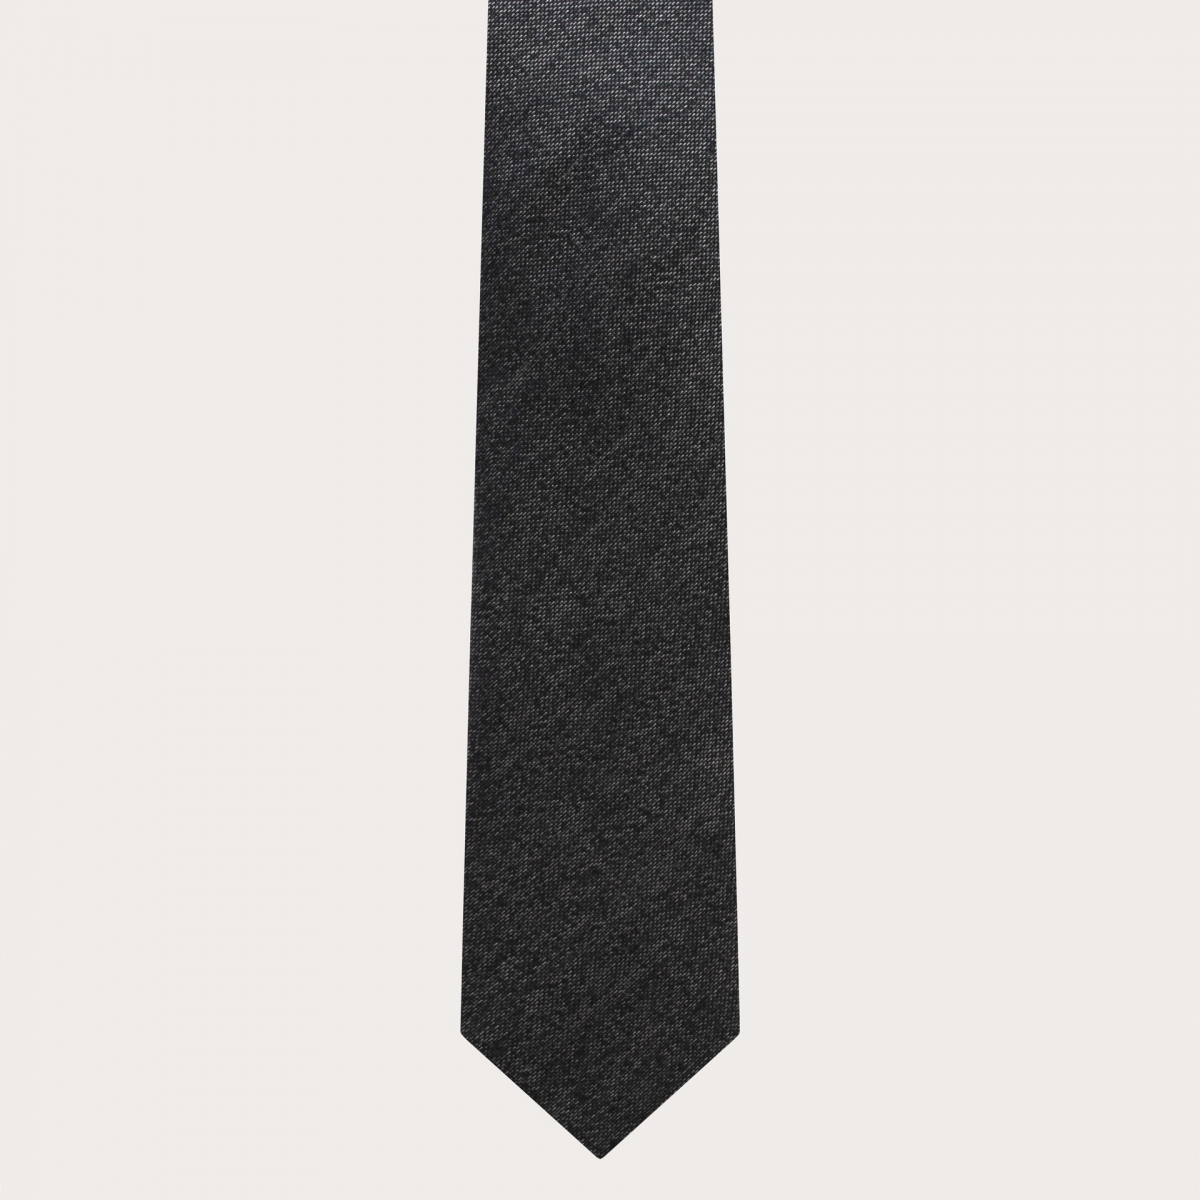 BRUCLE Edles Herren-Set aus Hosenträgern mit Knopflöchern und Krawatte, grau meliert